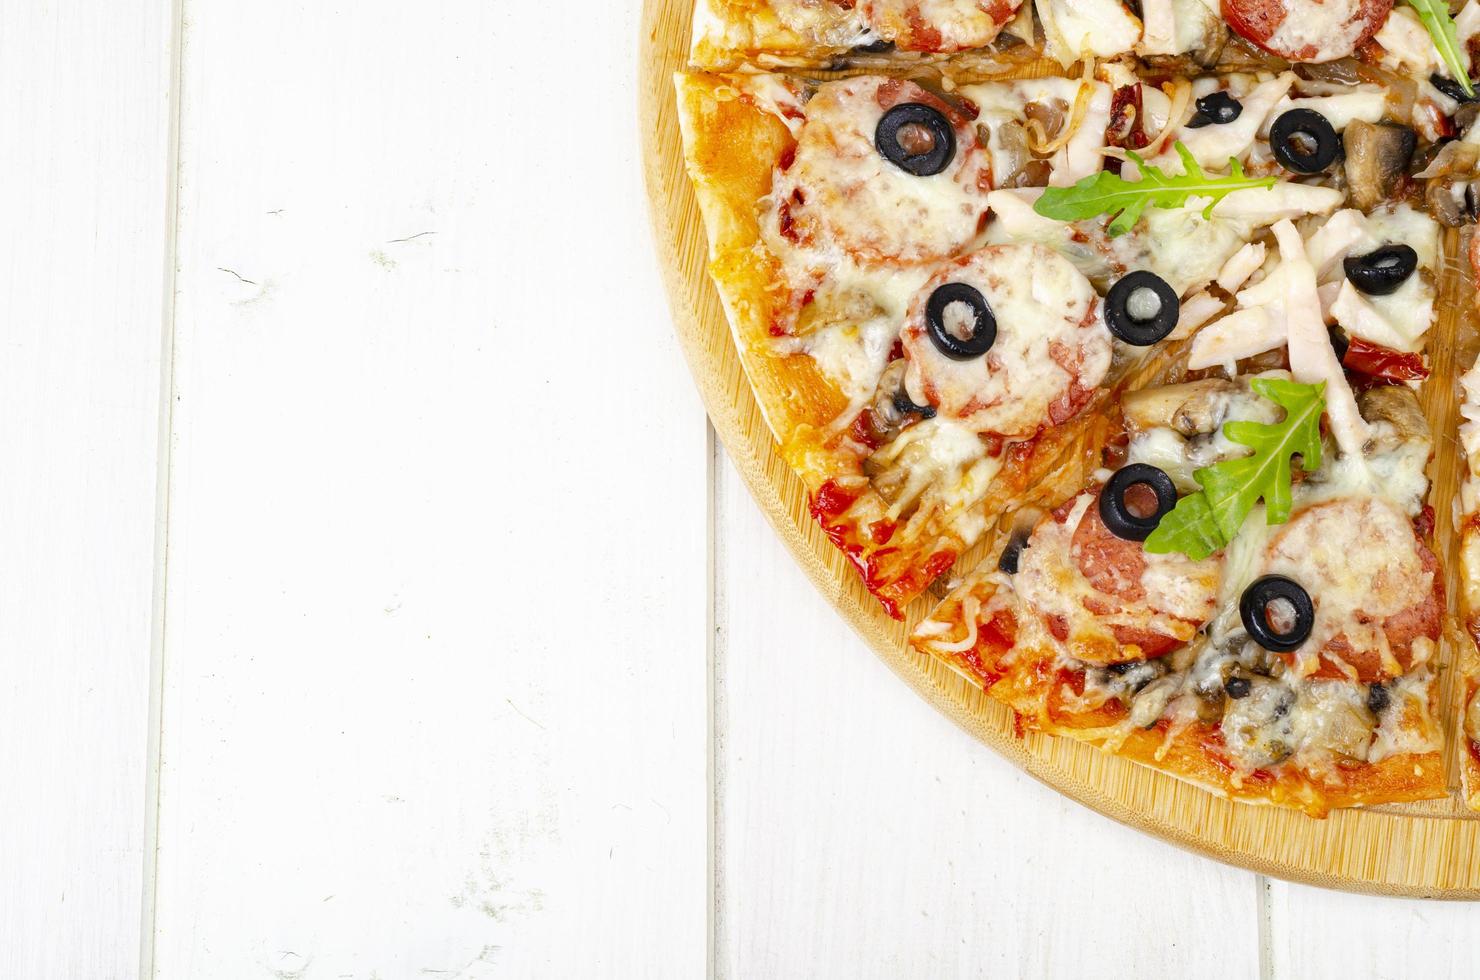 Pizza casera con salami, jamón y mozzarella en mesa de madera. foto de estudio